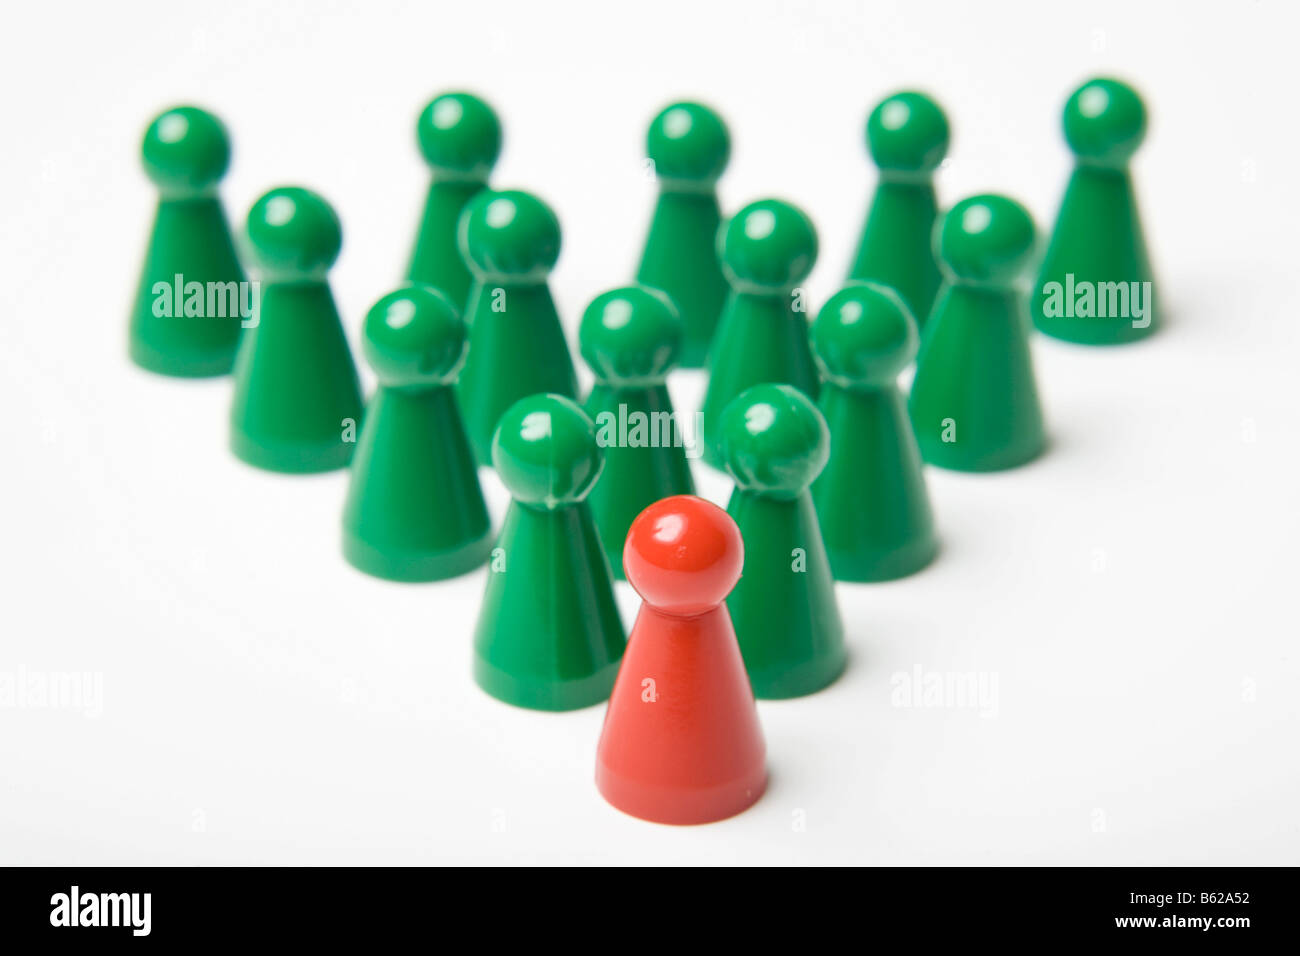 Pièces de jeu Vert debout derrière une seule pièce de jeu rouge, symbolique du leadership Banque D'Images